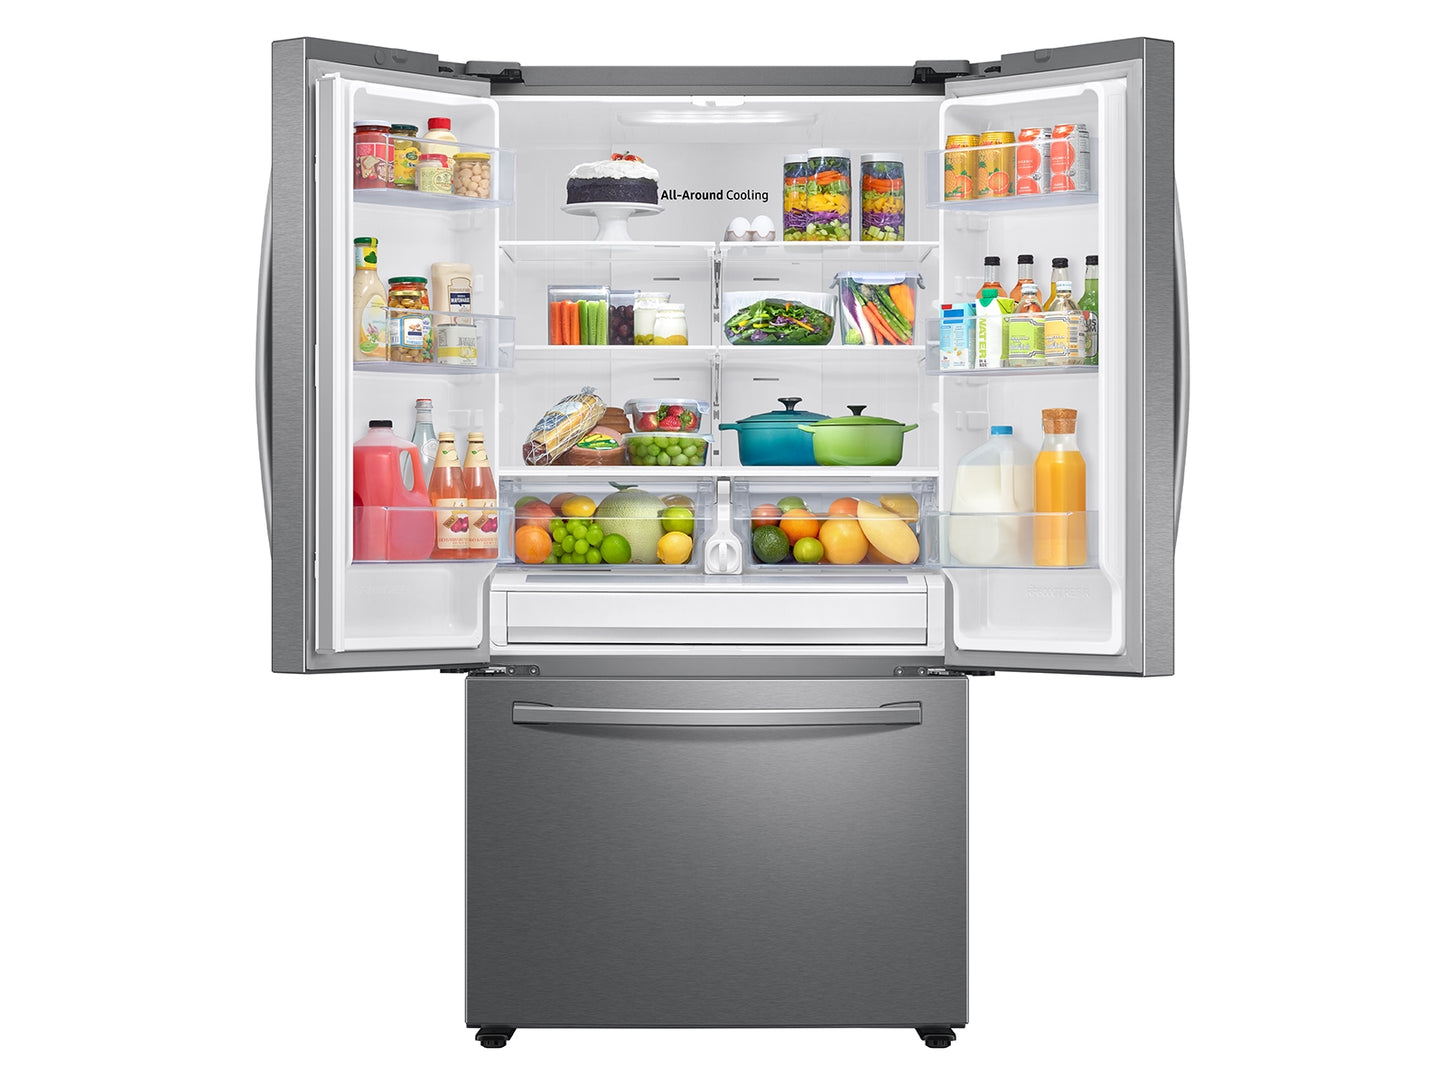 Samsung 28 cu. ft. Large Capacity 3-Door French Door Refrigerator in Stainless Steel